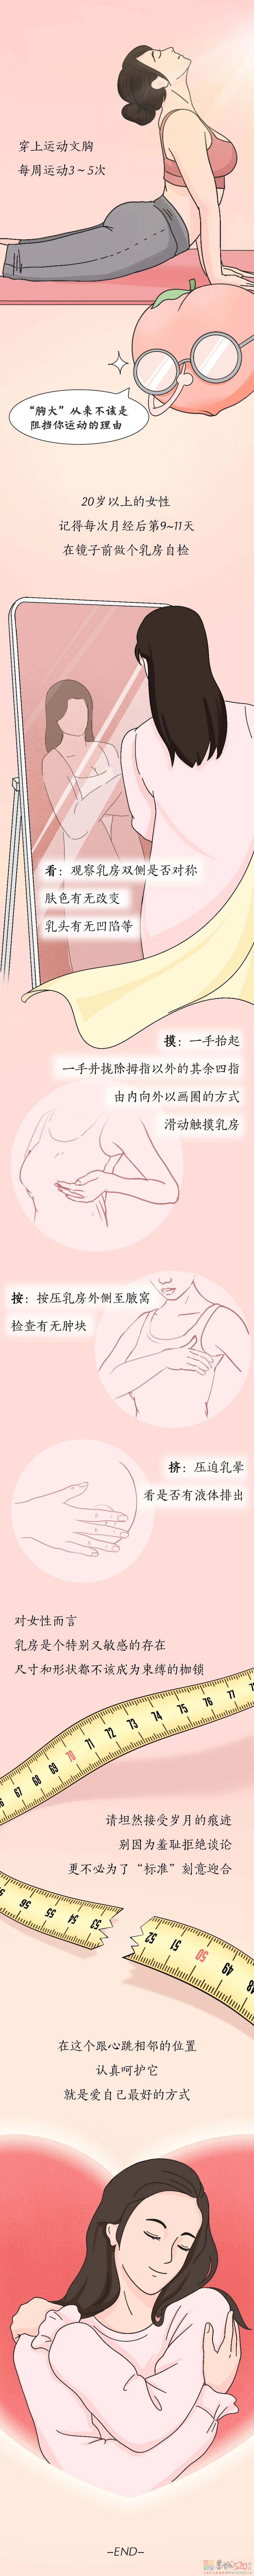 女性的乳房一生要经历什么？540 / 作者:健康小天使 / 帖子ID:304875